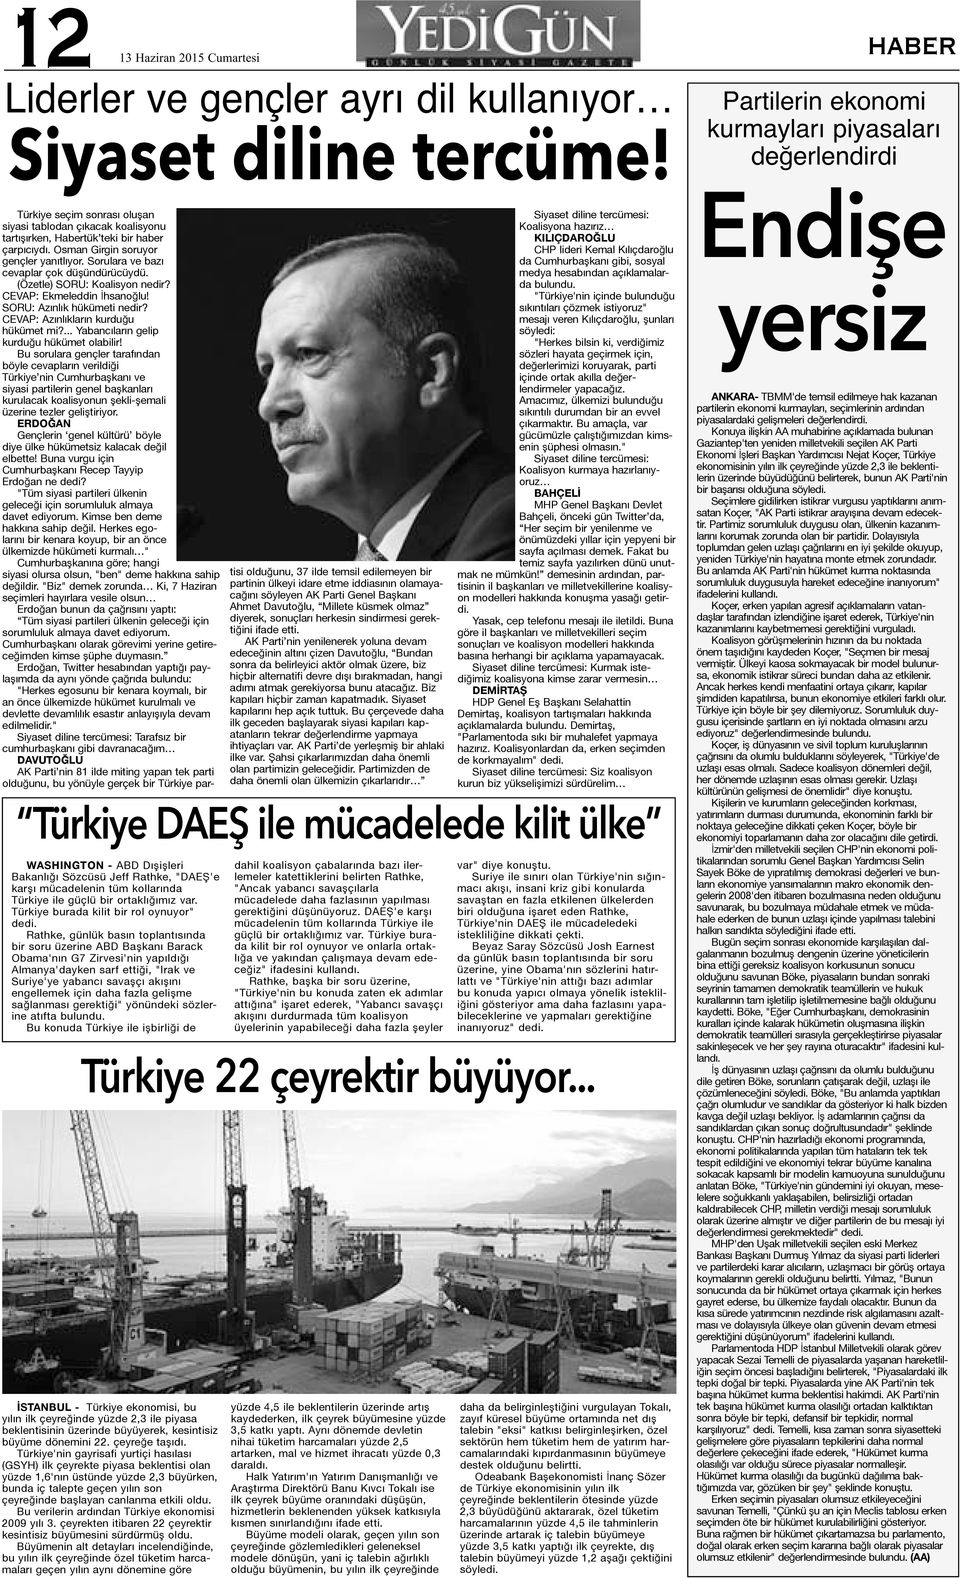 Türkiye burada kilit bir rol oynuyor" Rathke, günlük basın toplantısında bir soru üzerine ABD Başkanı Barack Obama'nın G7 Zirvesi'nin yapıldığı Almanya'dayken sarf ettiği, "Irak ve Suriye'ye yabancı